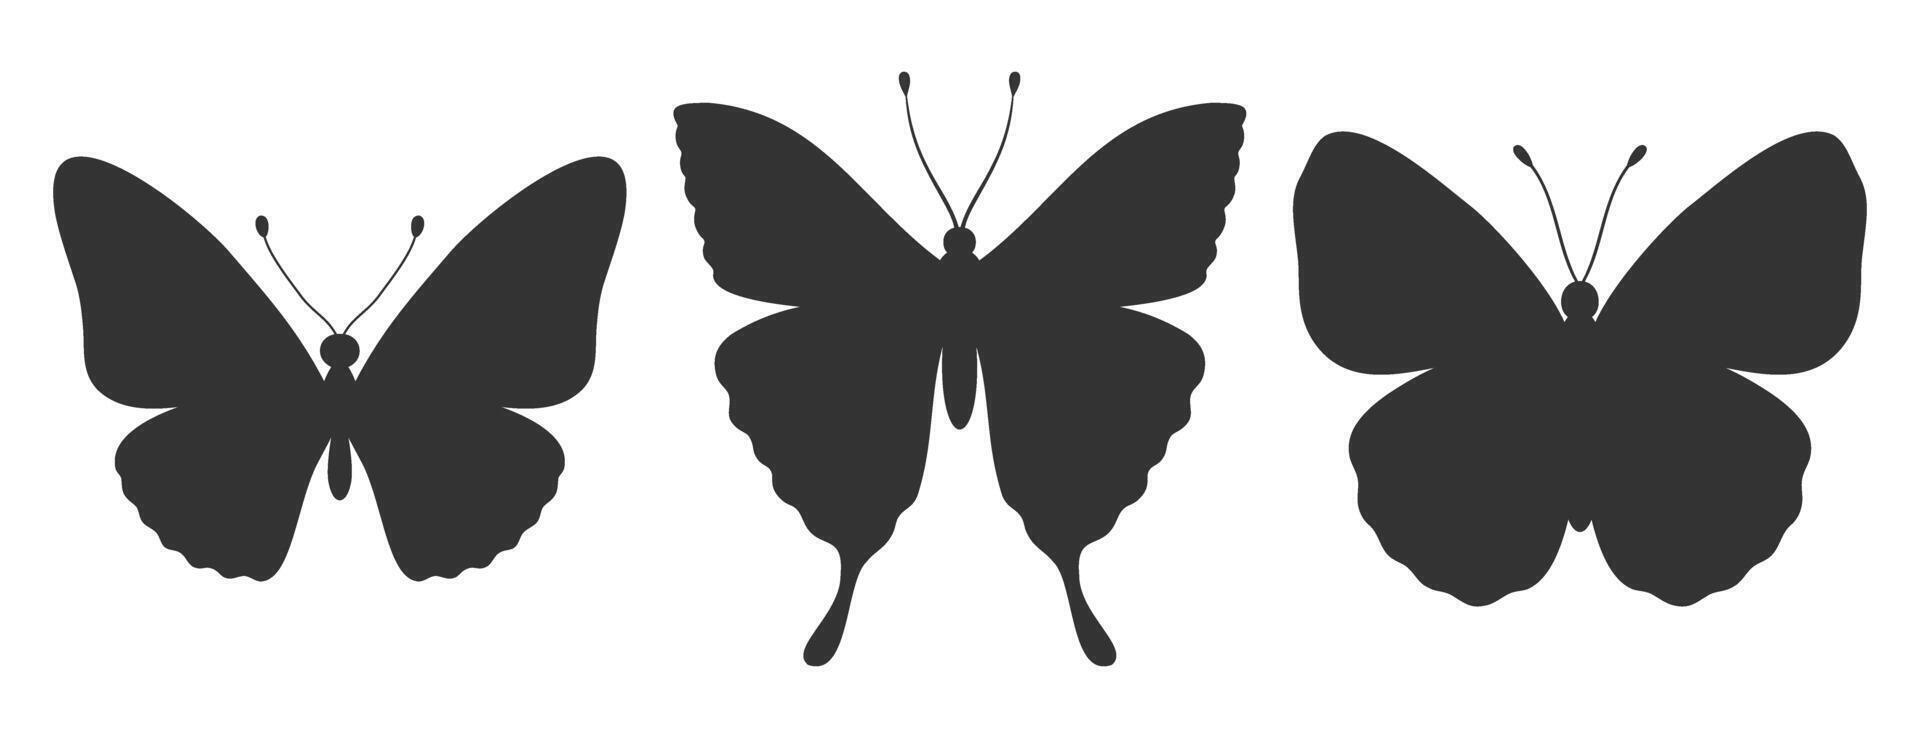 reeks van drie vlinder silhouetten. insect pictogrammen, tatoeages. gemakkelijk zwart vormen van vlinders en motten. vector illustratie